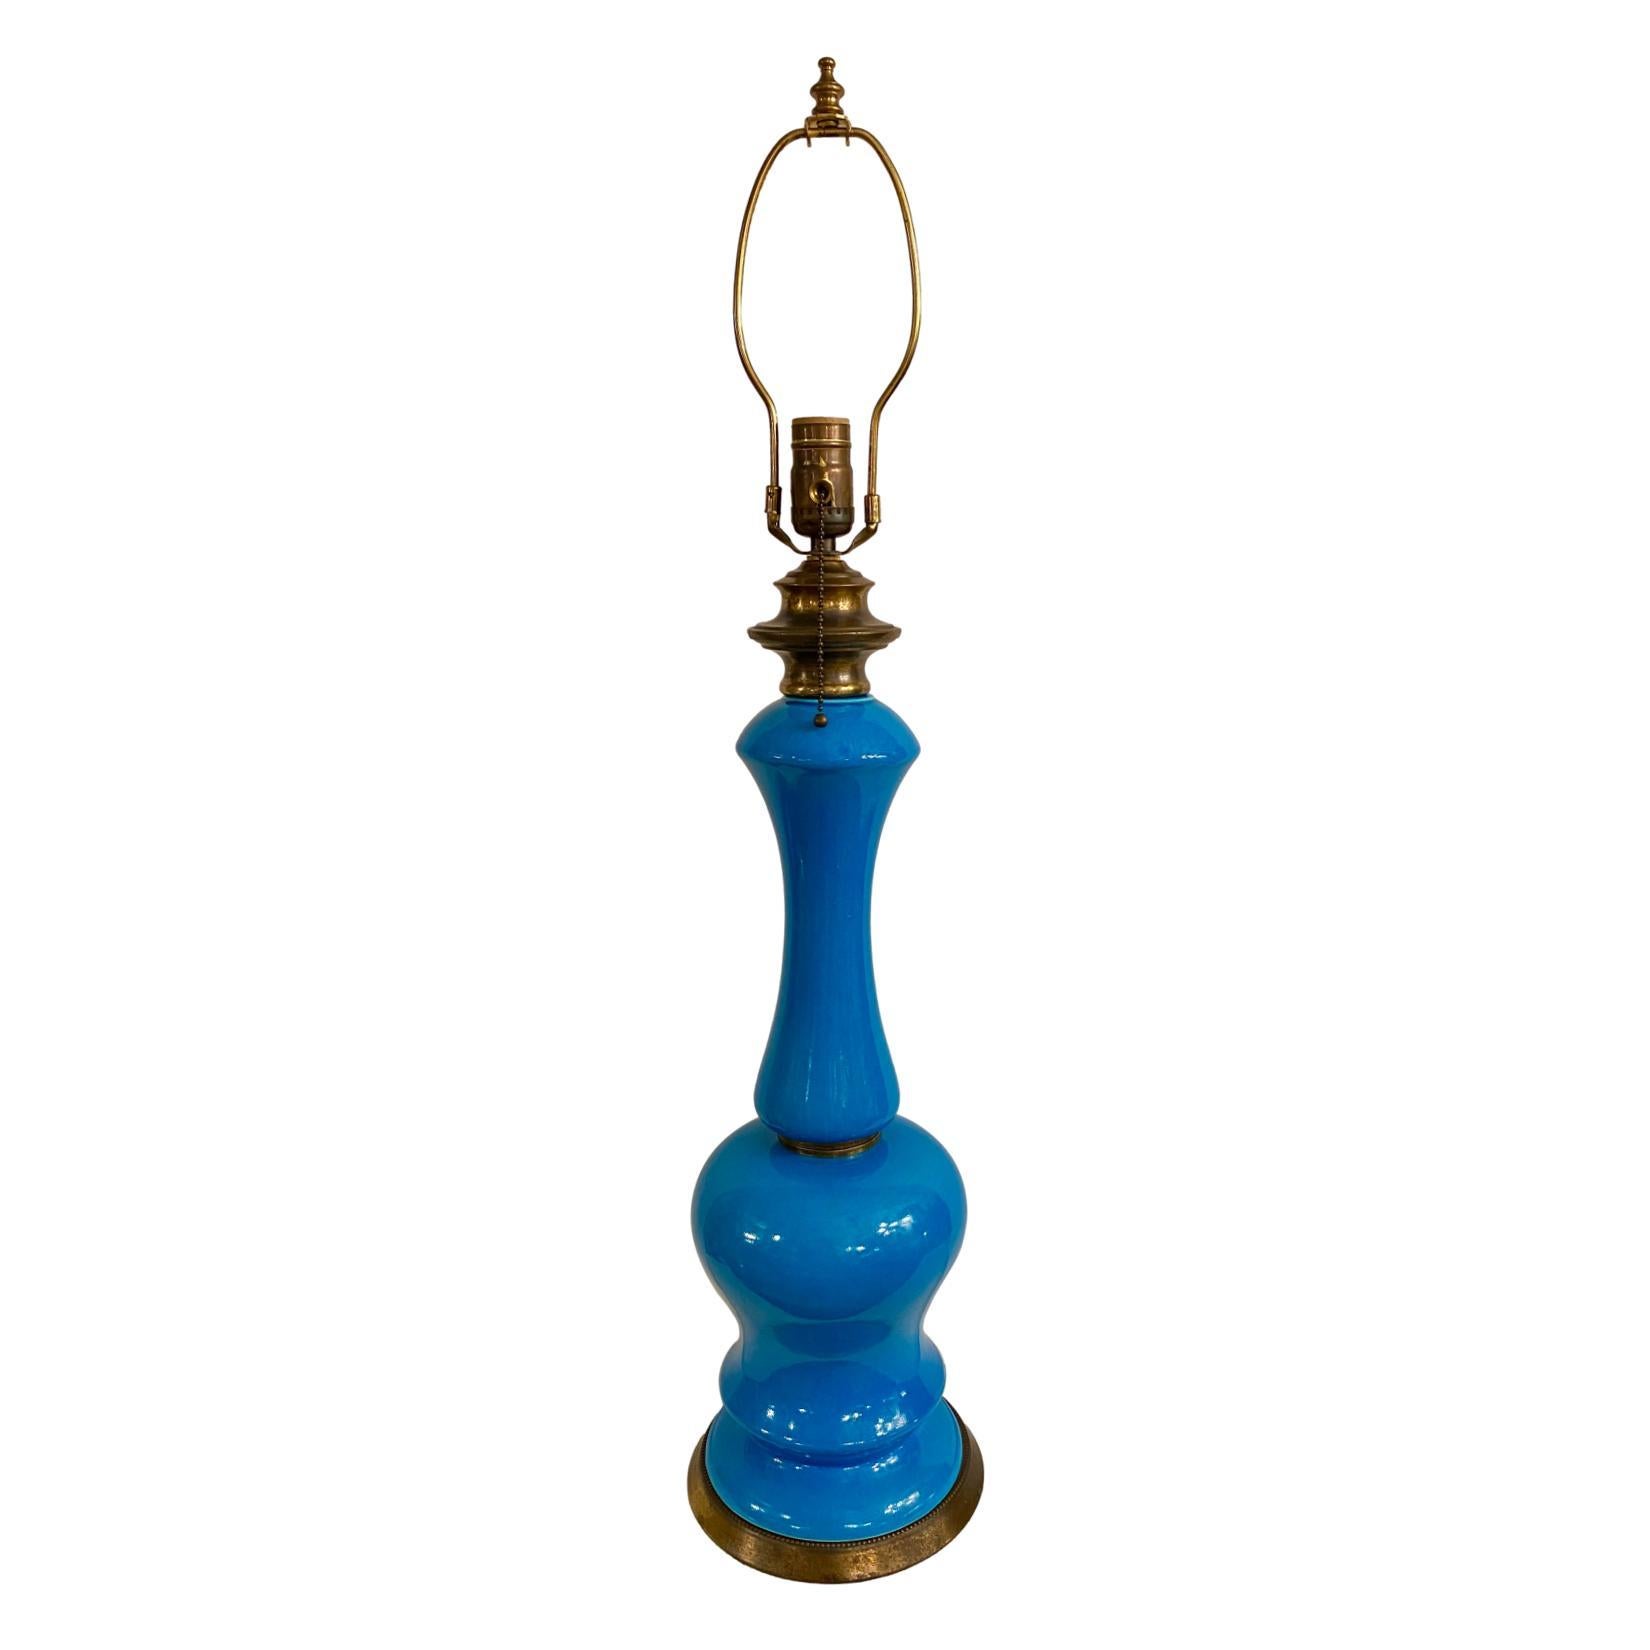 Lampe de table en porcelaine bleue azur, datant des années 1940.

Mesures :
Hauteur du corps : 21
Hauteur jusqu'à l'appui de l'abat-jour : 32